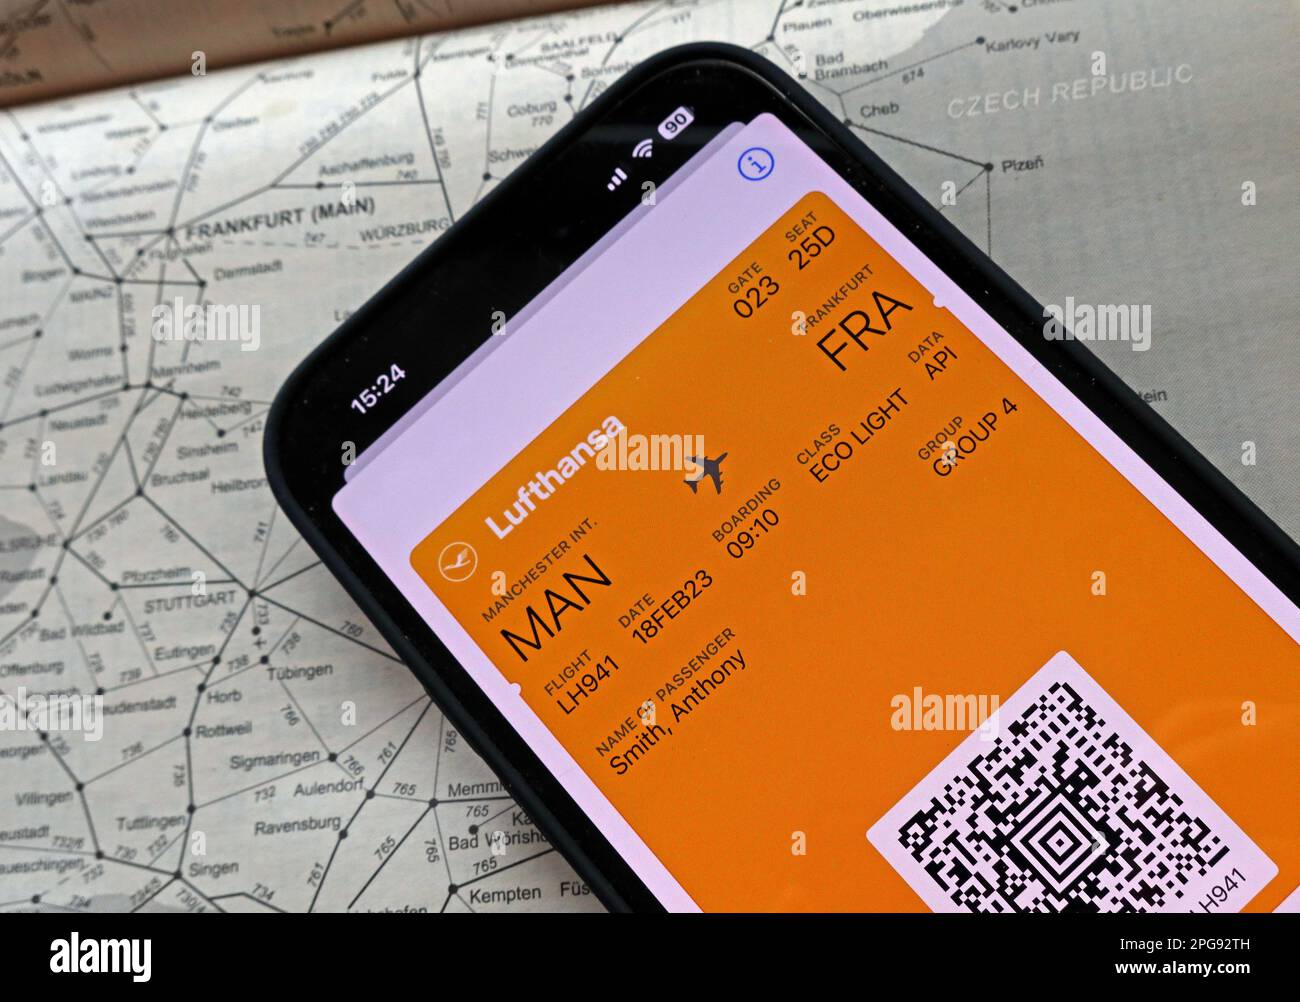 Carte d'embarquement numérique de vol D'avion MAN-FRA sur téléphone mobile, avec Lufthansa, et carte de transport ferroviaire de Francfort, Allemagne Banque D'Images